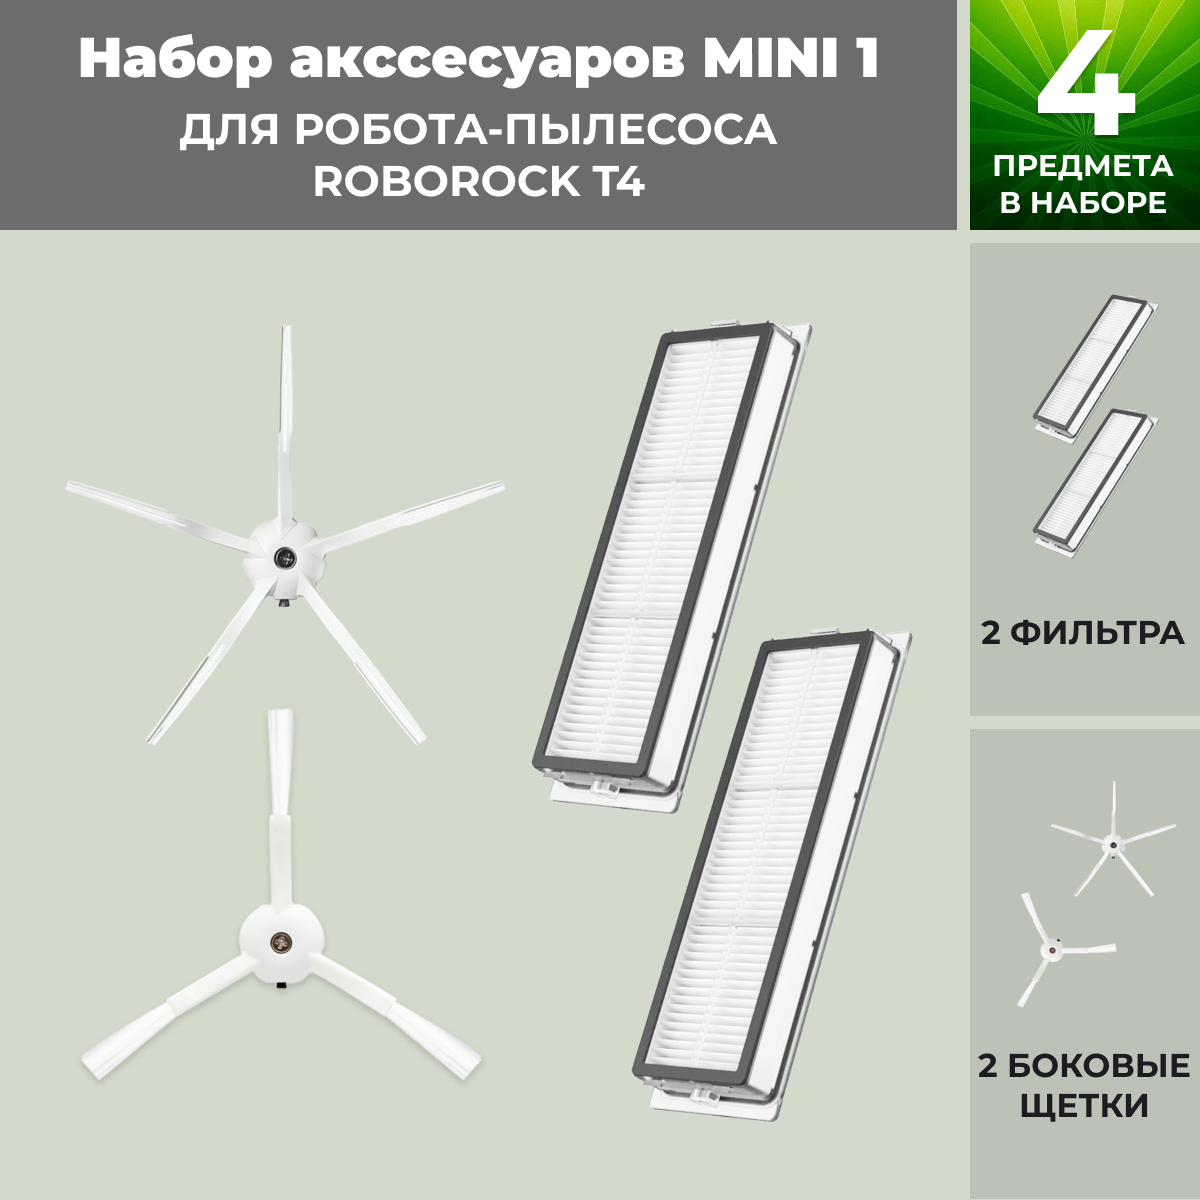 Набор аксессуаров Mini 1 для робота-пылесоса Roborock T4, белые боковые щетки 558348, фото 1